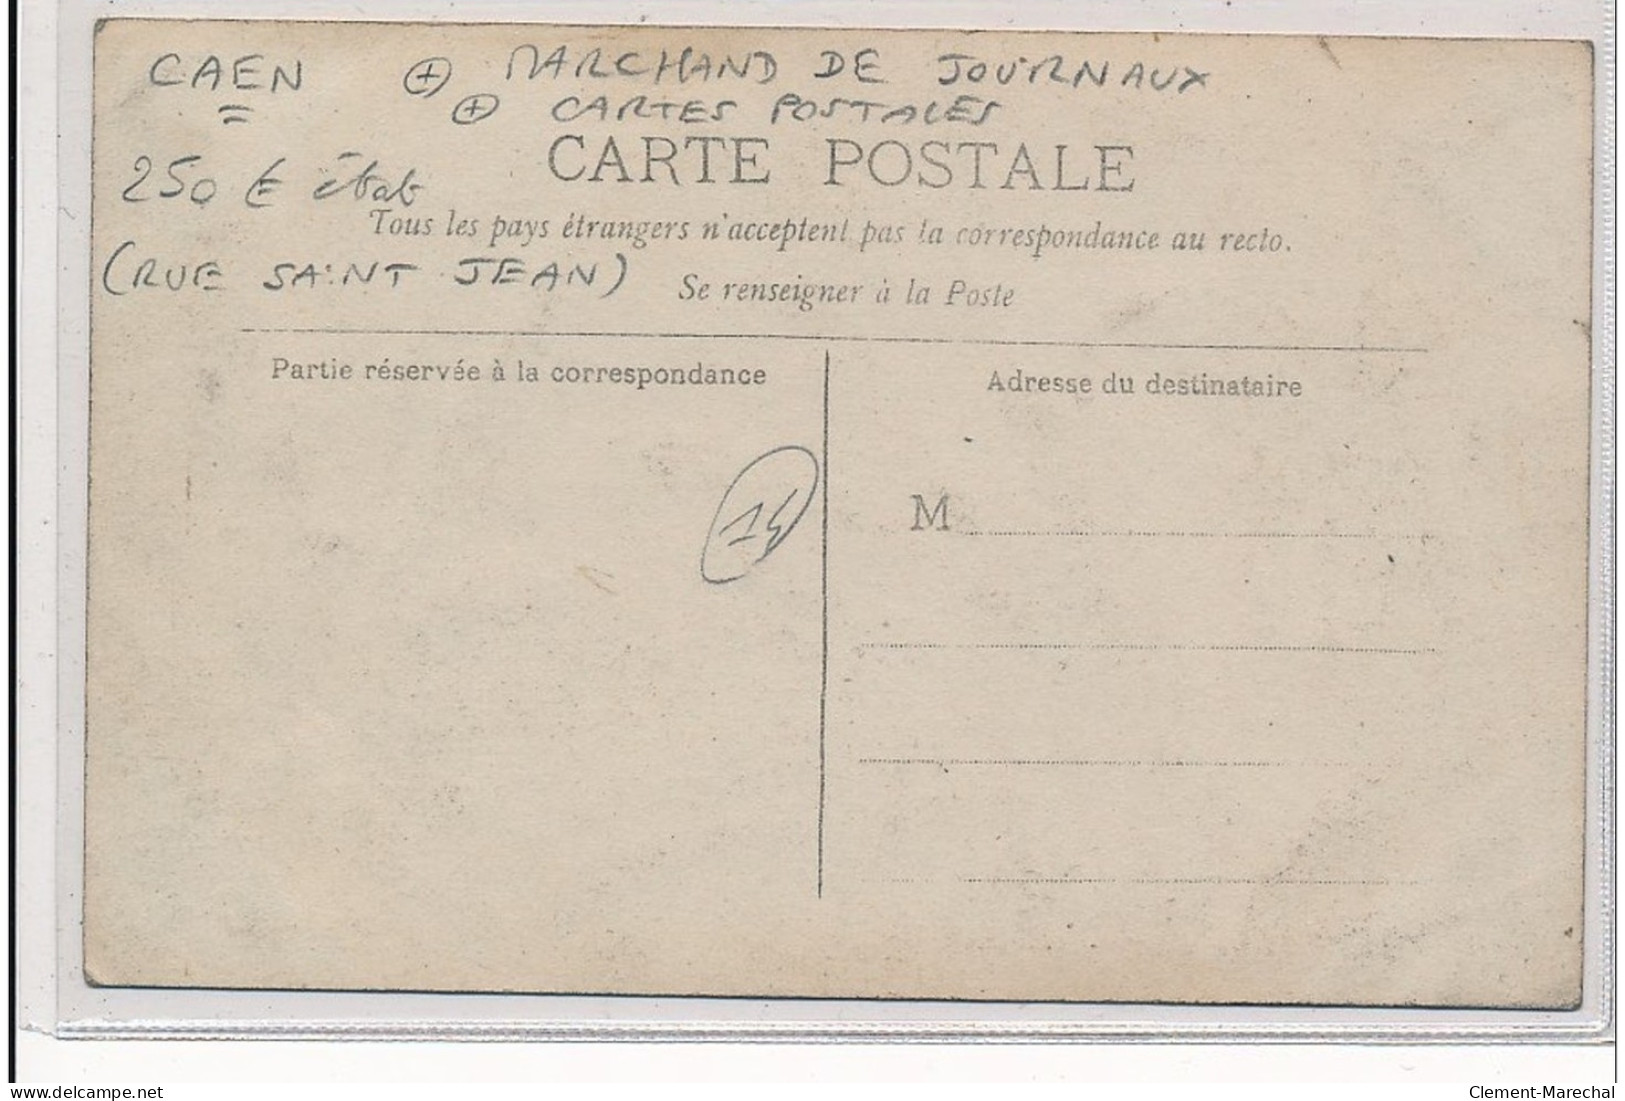 CAEN : Marchand De Journaux, Cartes Postales Rue Saint-jean, Le Petit Parisien - Etat - Caen